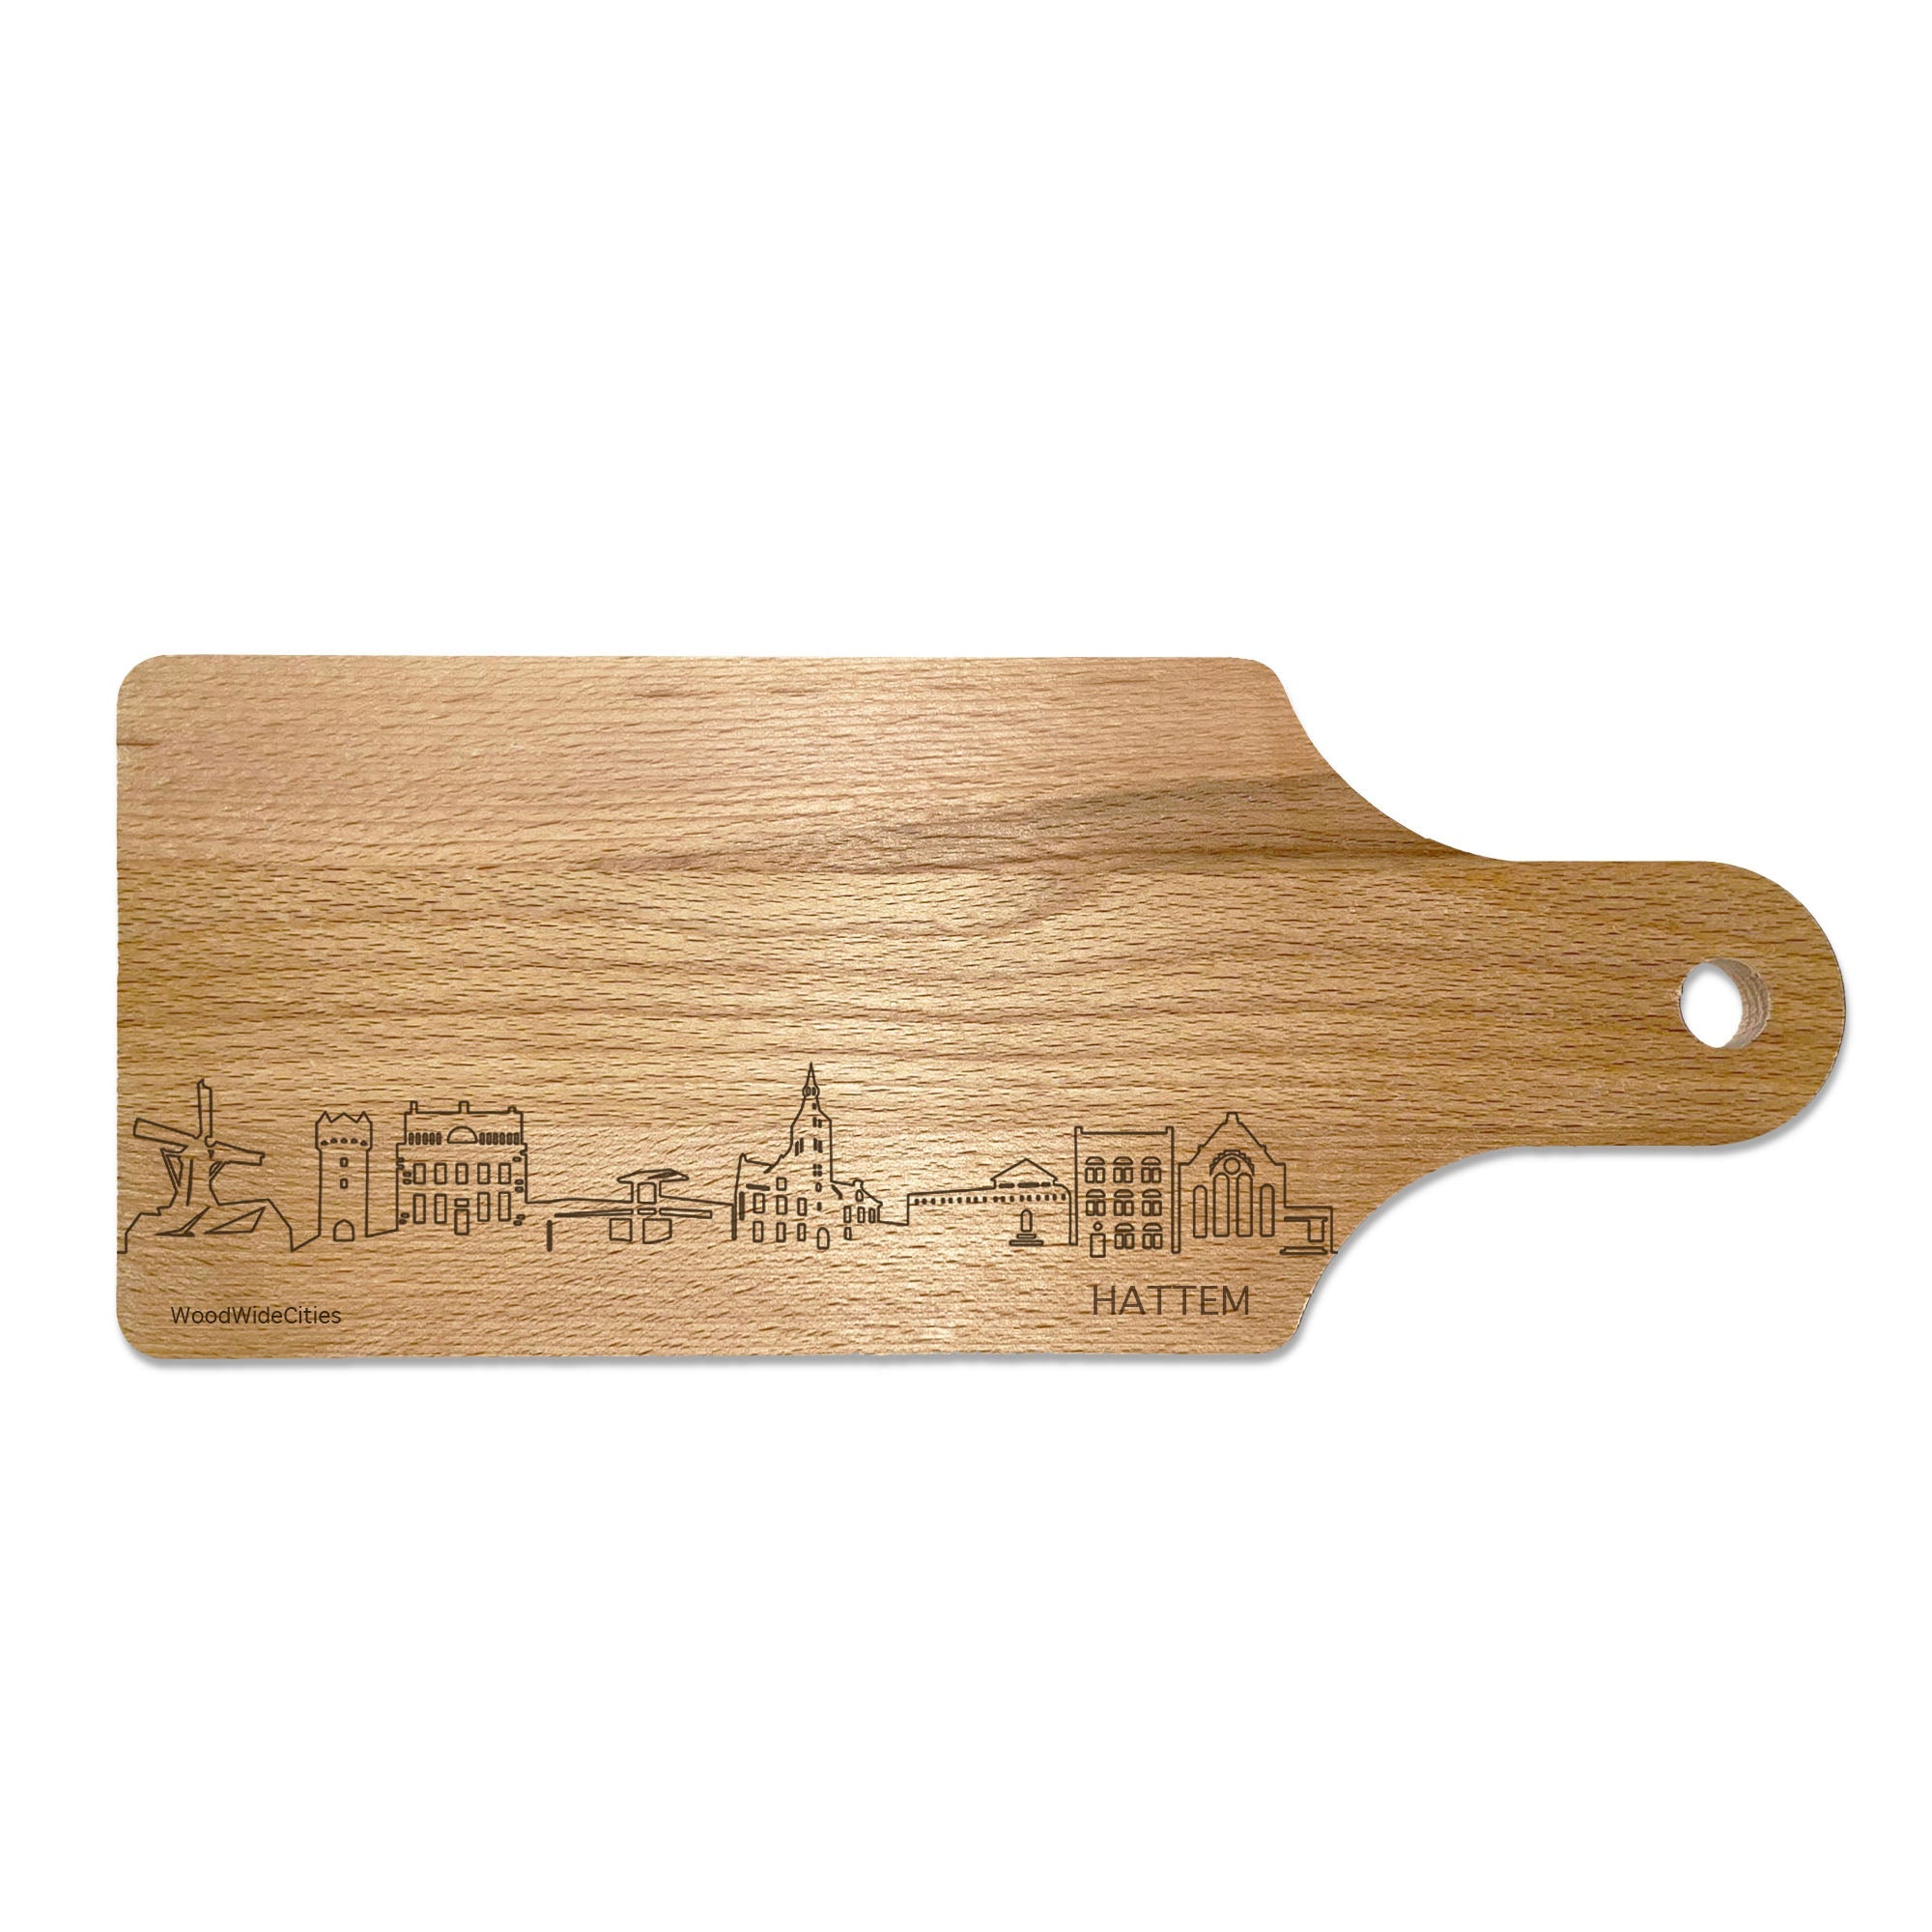 Skyline Borrelplank Hattem houten cadeau decoratie relatiegeschenk van WoodWideCities